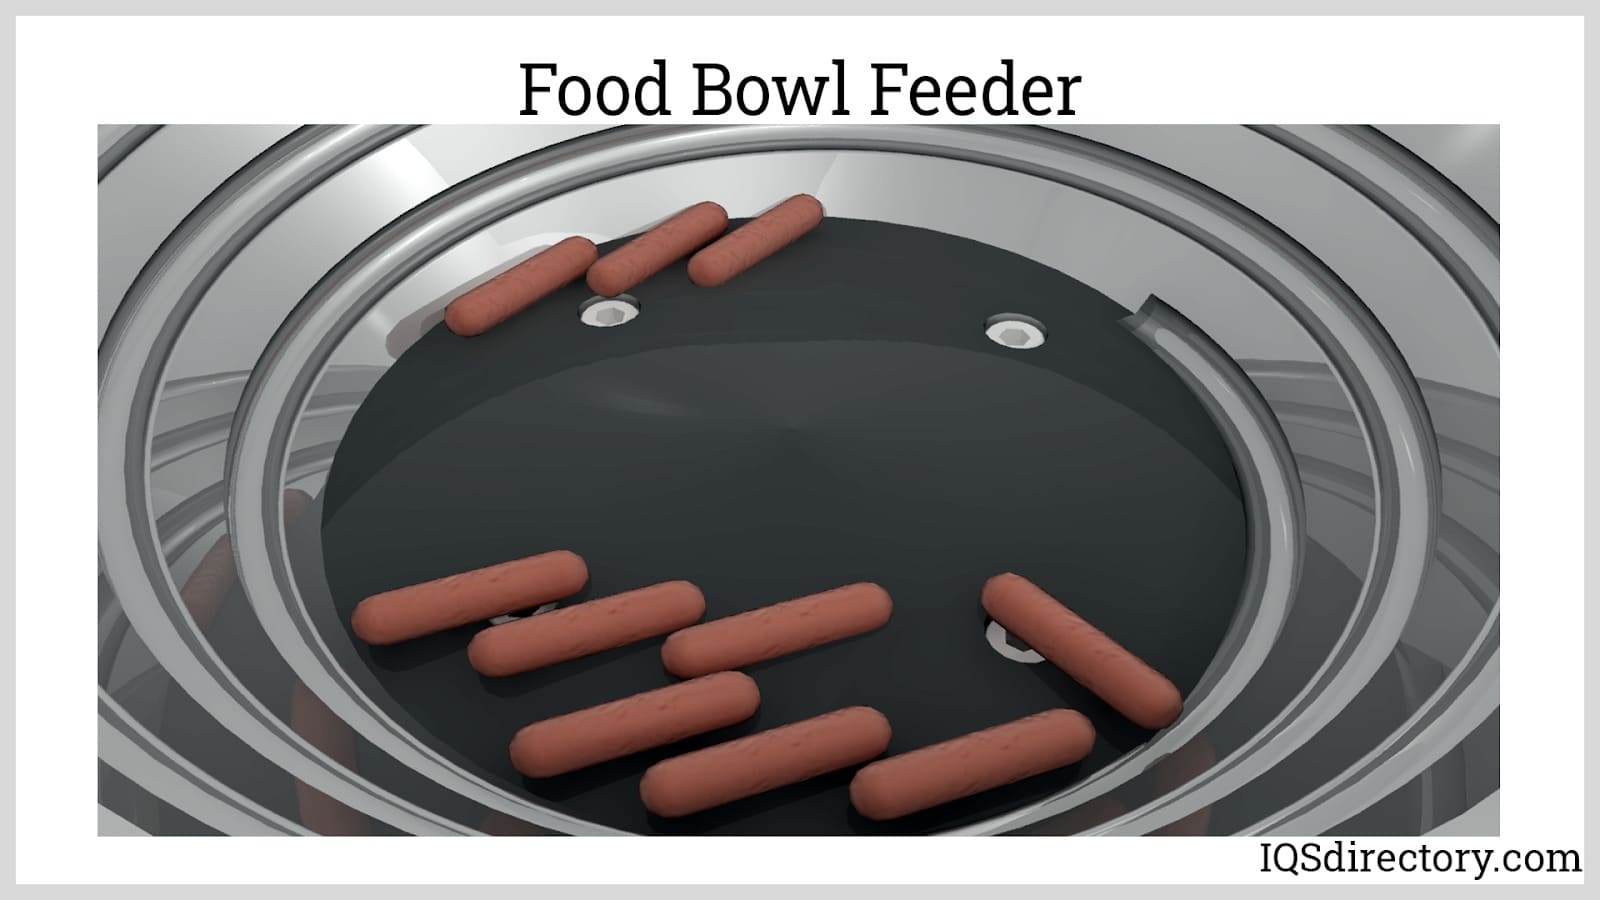 Food Bowl Feeder